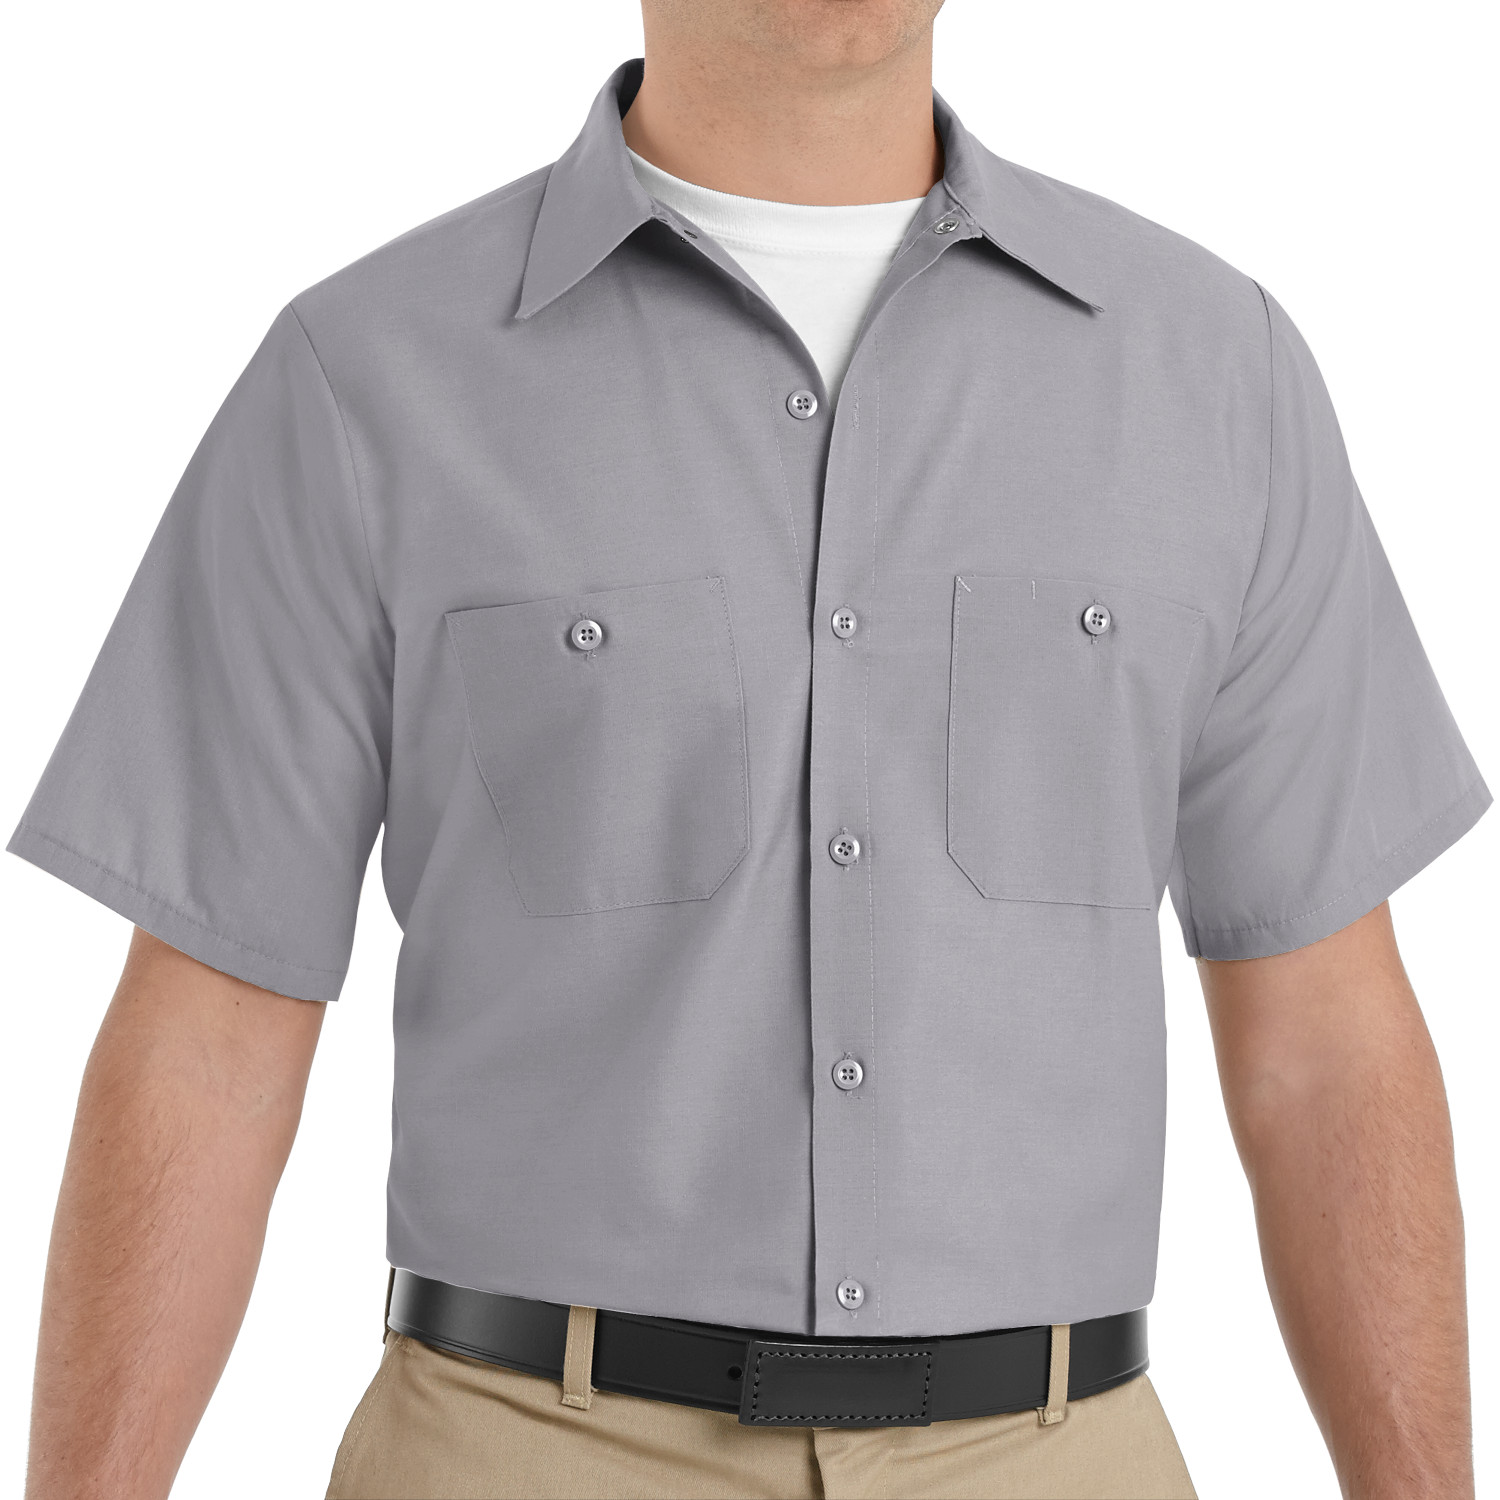 Men's Industrial Work Shirt SP24SV